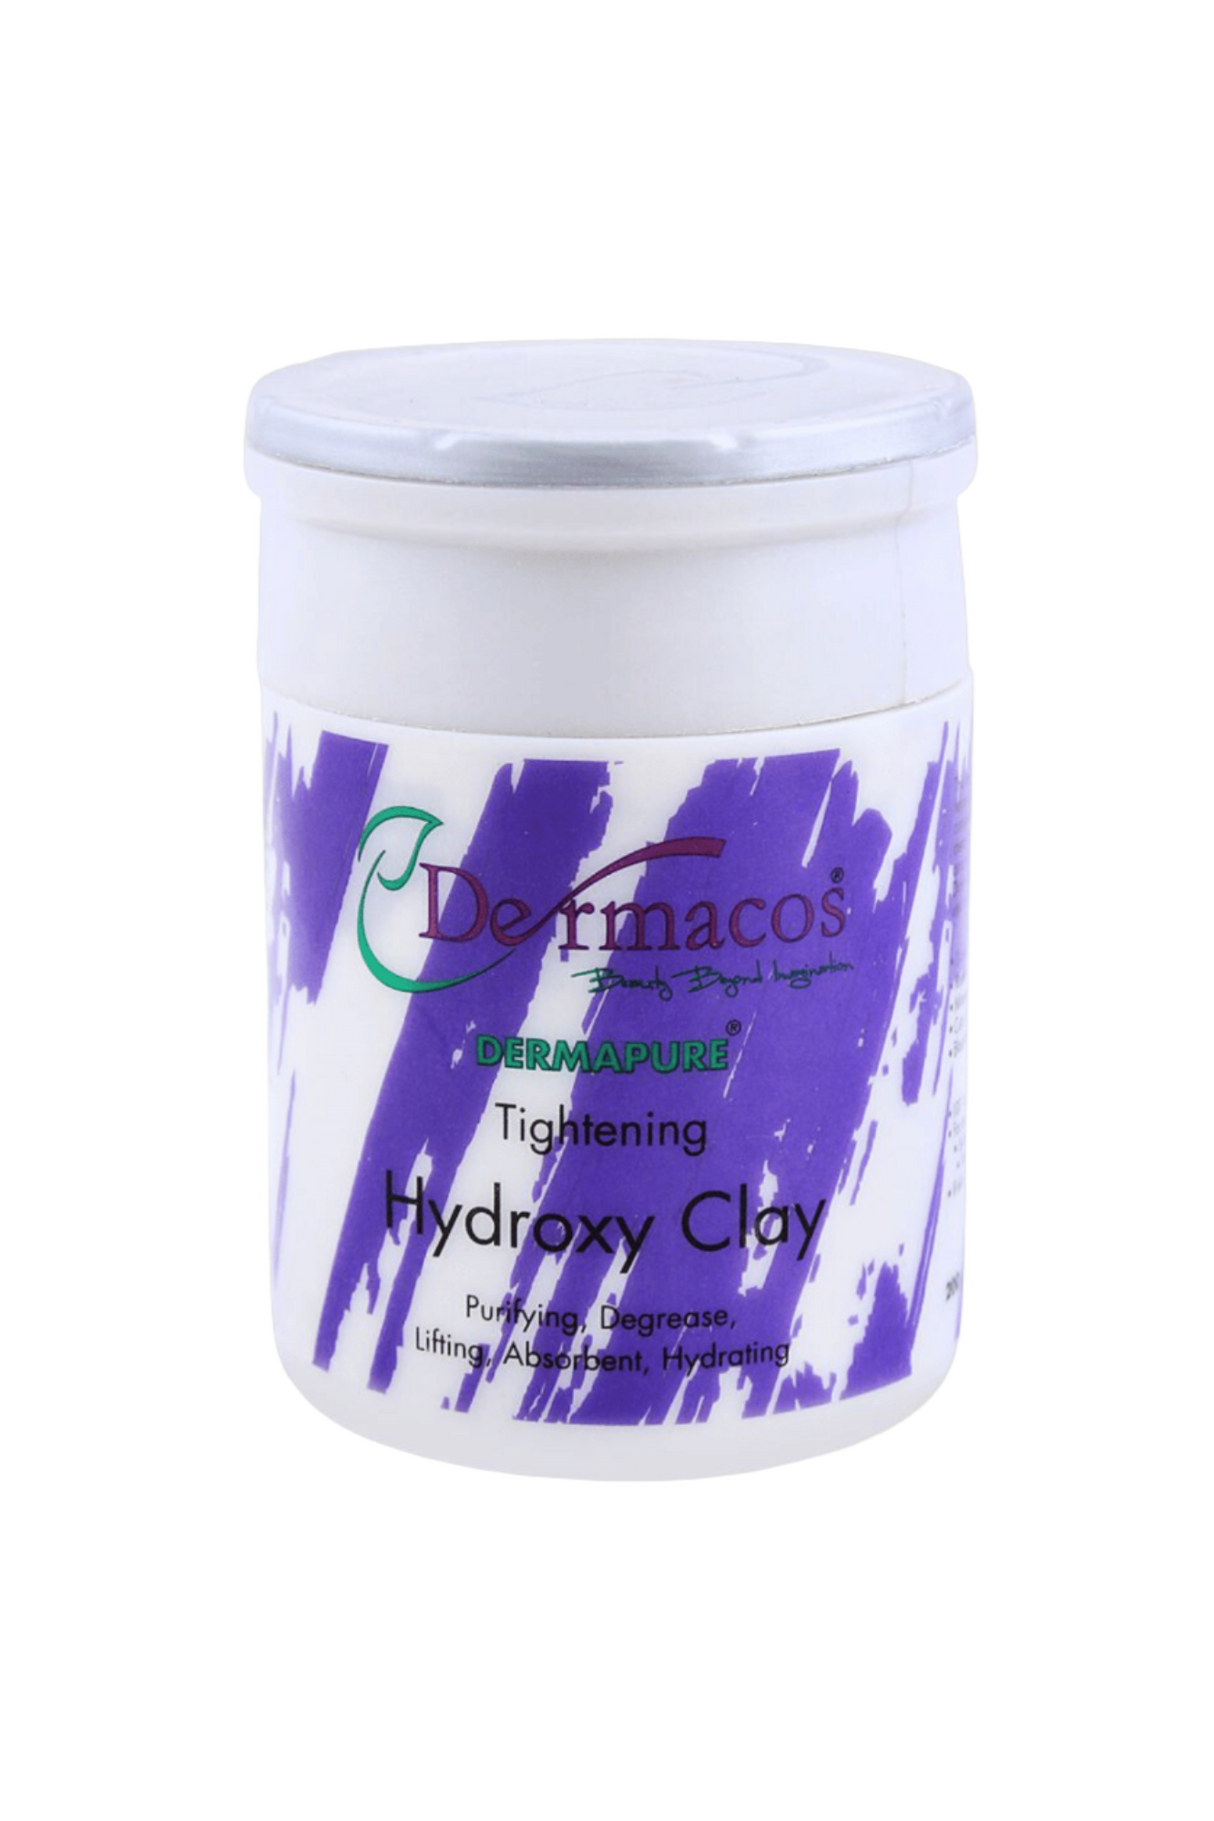 dermacos hydroxy clay 200g